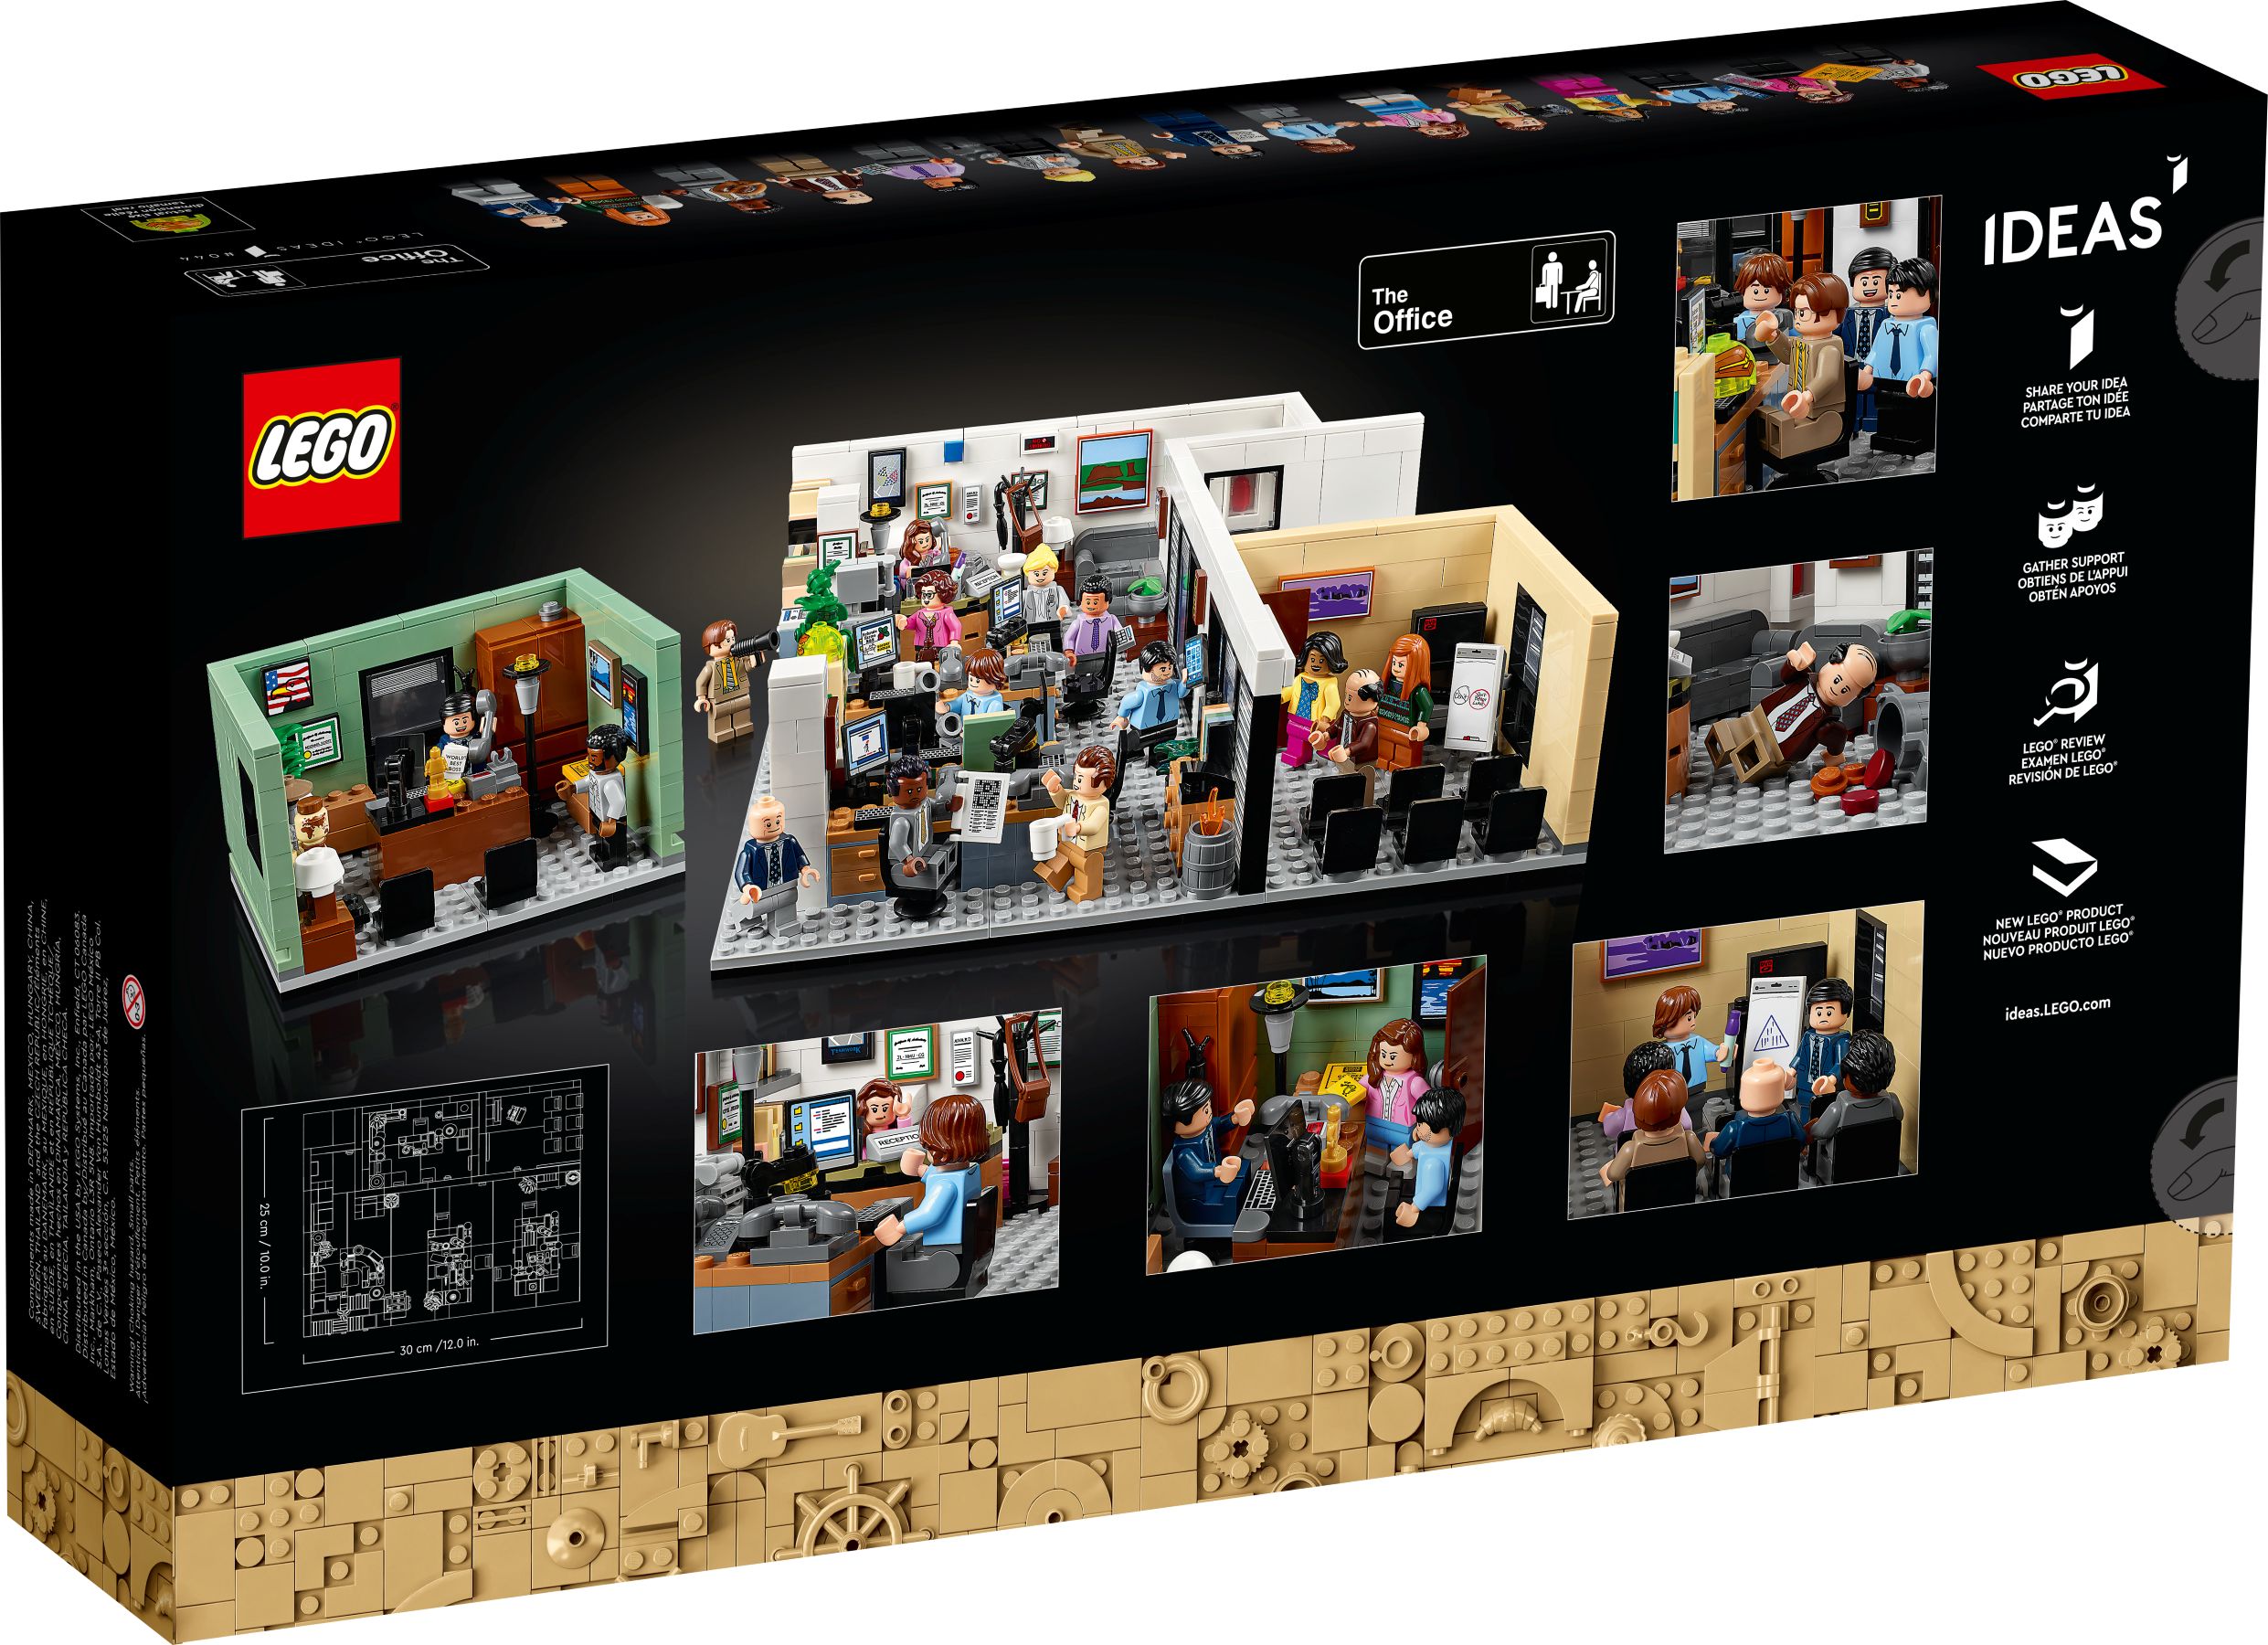 LEGO Ideas 21336 The Office LEGO_21336_alt10.jpg